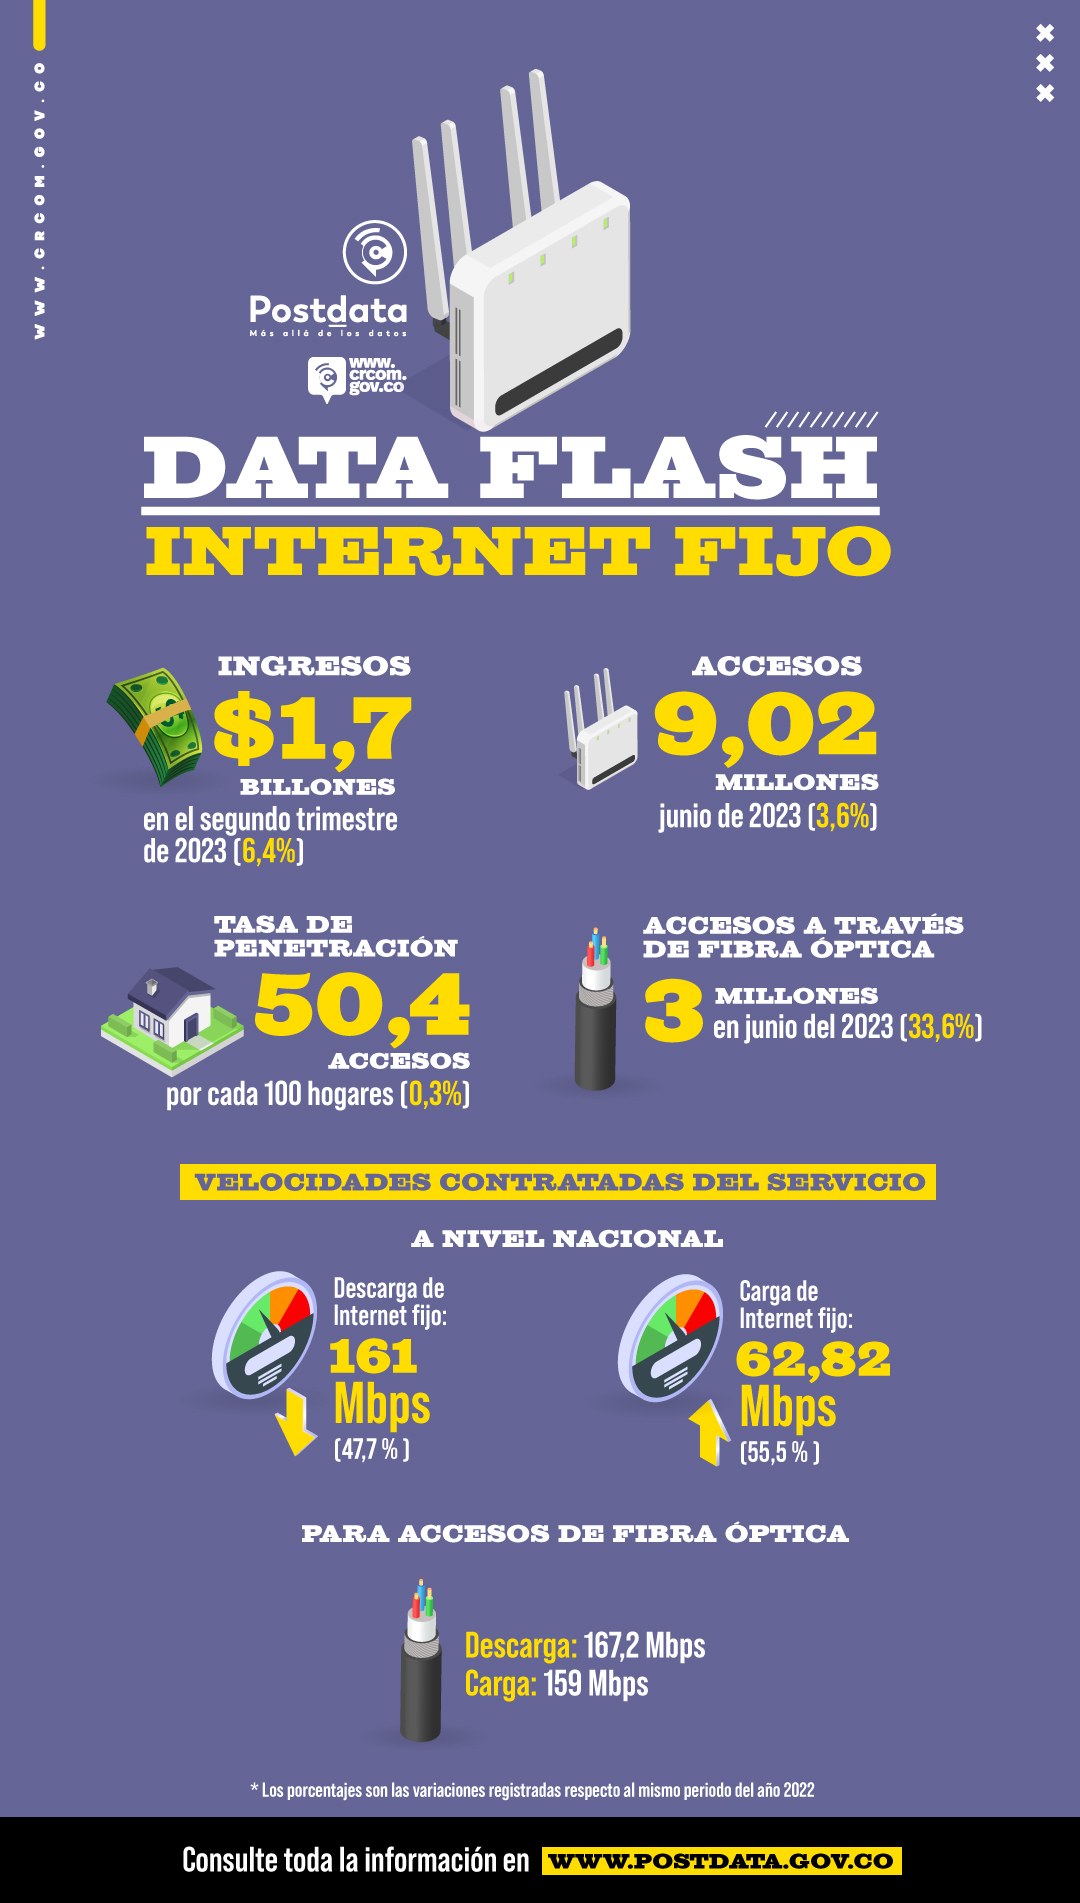 Accesos a Internet fijo de fibra óptica superaron los 3 millones en junio de 2023